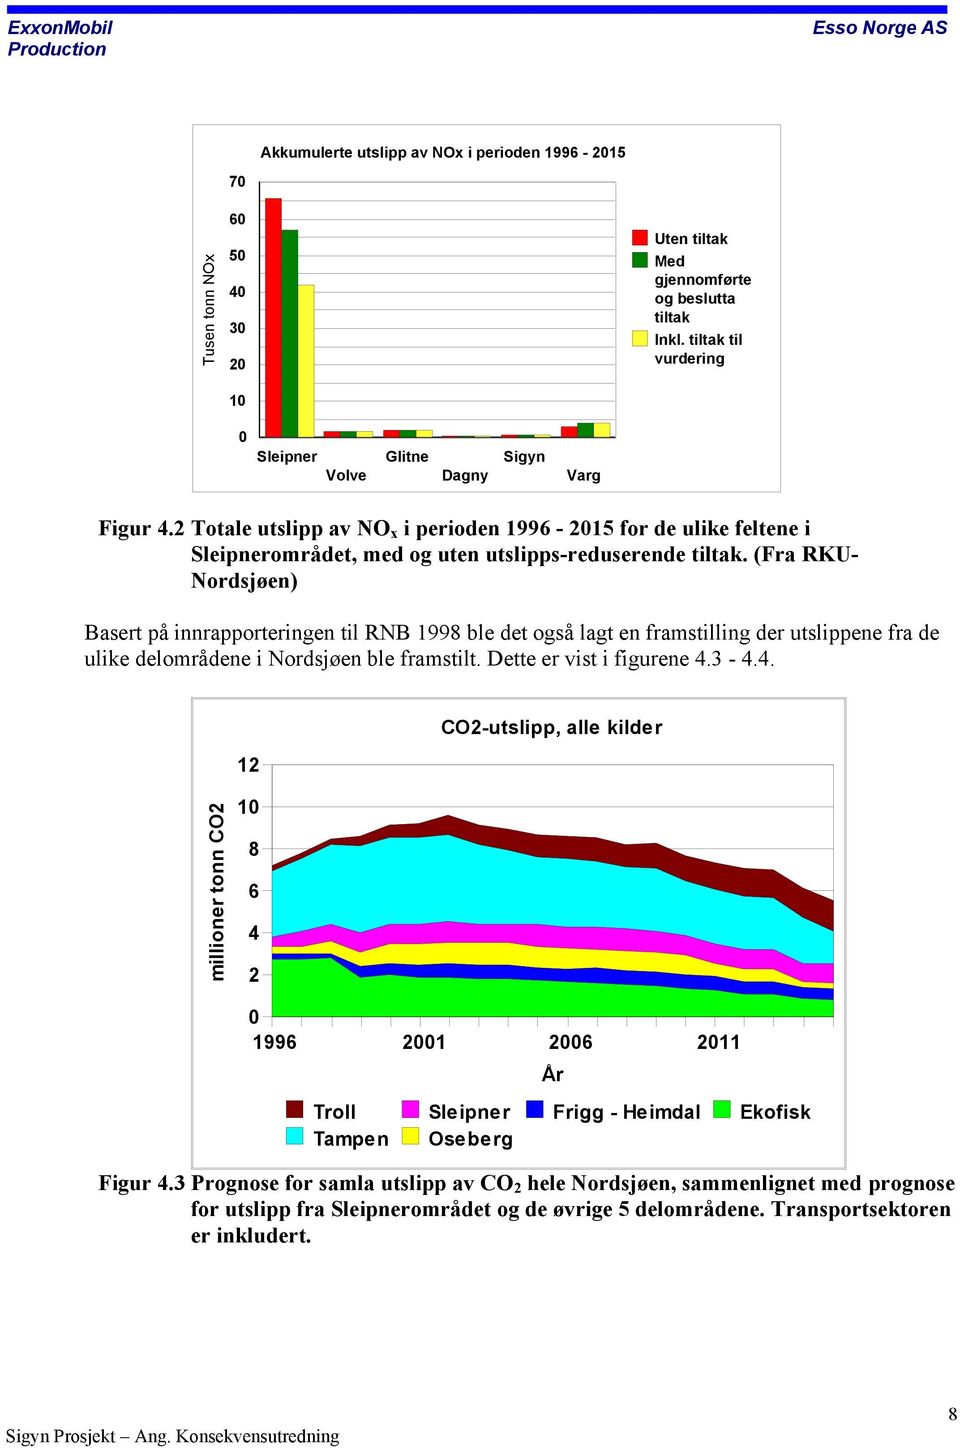 (Fra RKU- Nordsjøen) Basert på innrapporteringen til RNB 1998 ble det også lagt en framstilling der utslippene fra de ulike delområdene i Nordsjøen ble framstilt. Dette er vist i figurene 4.